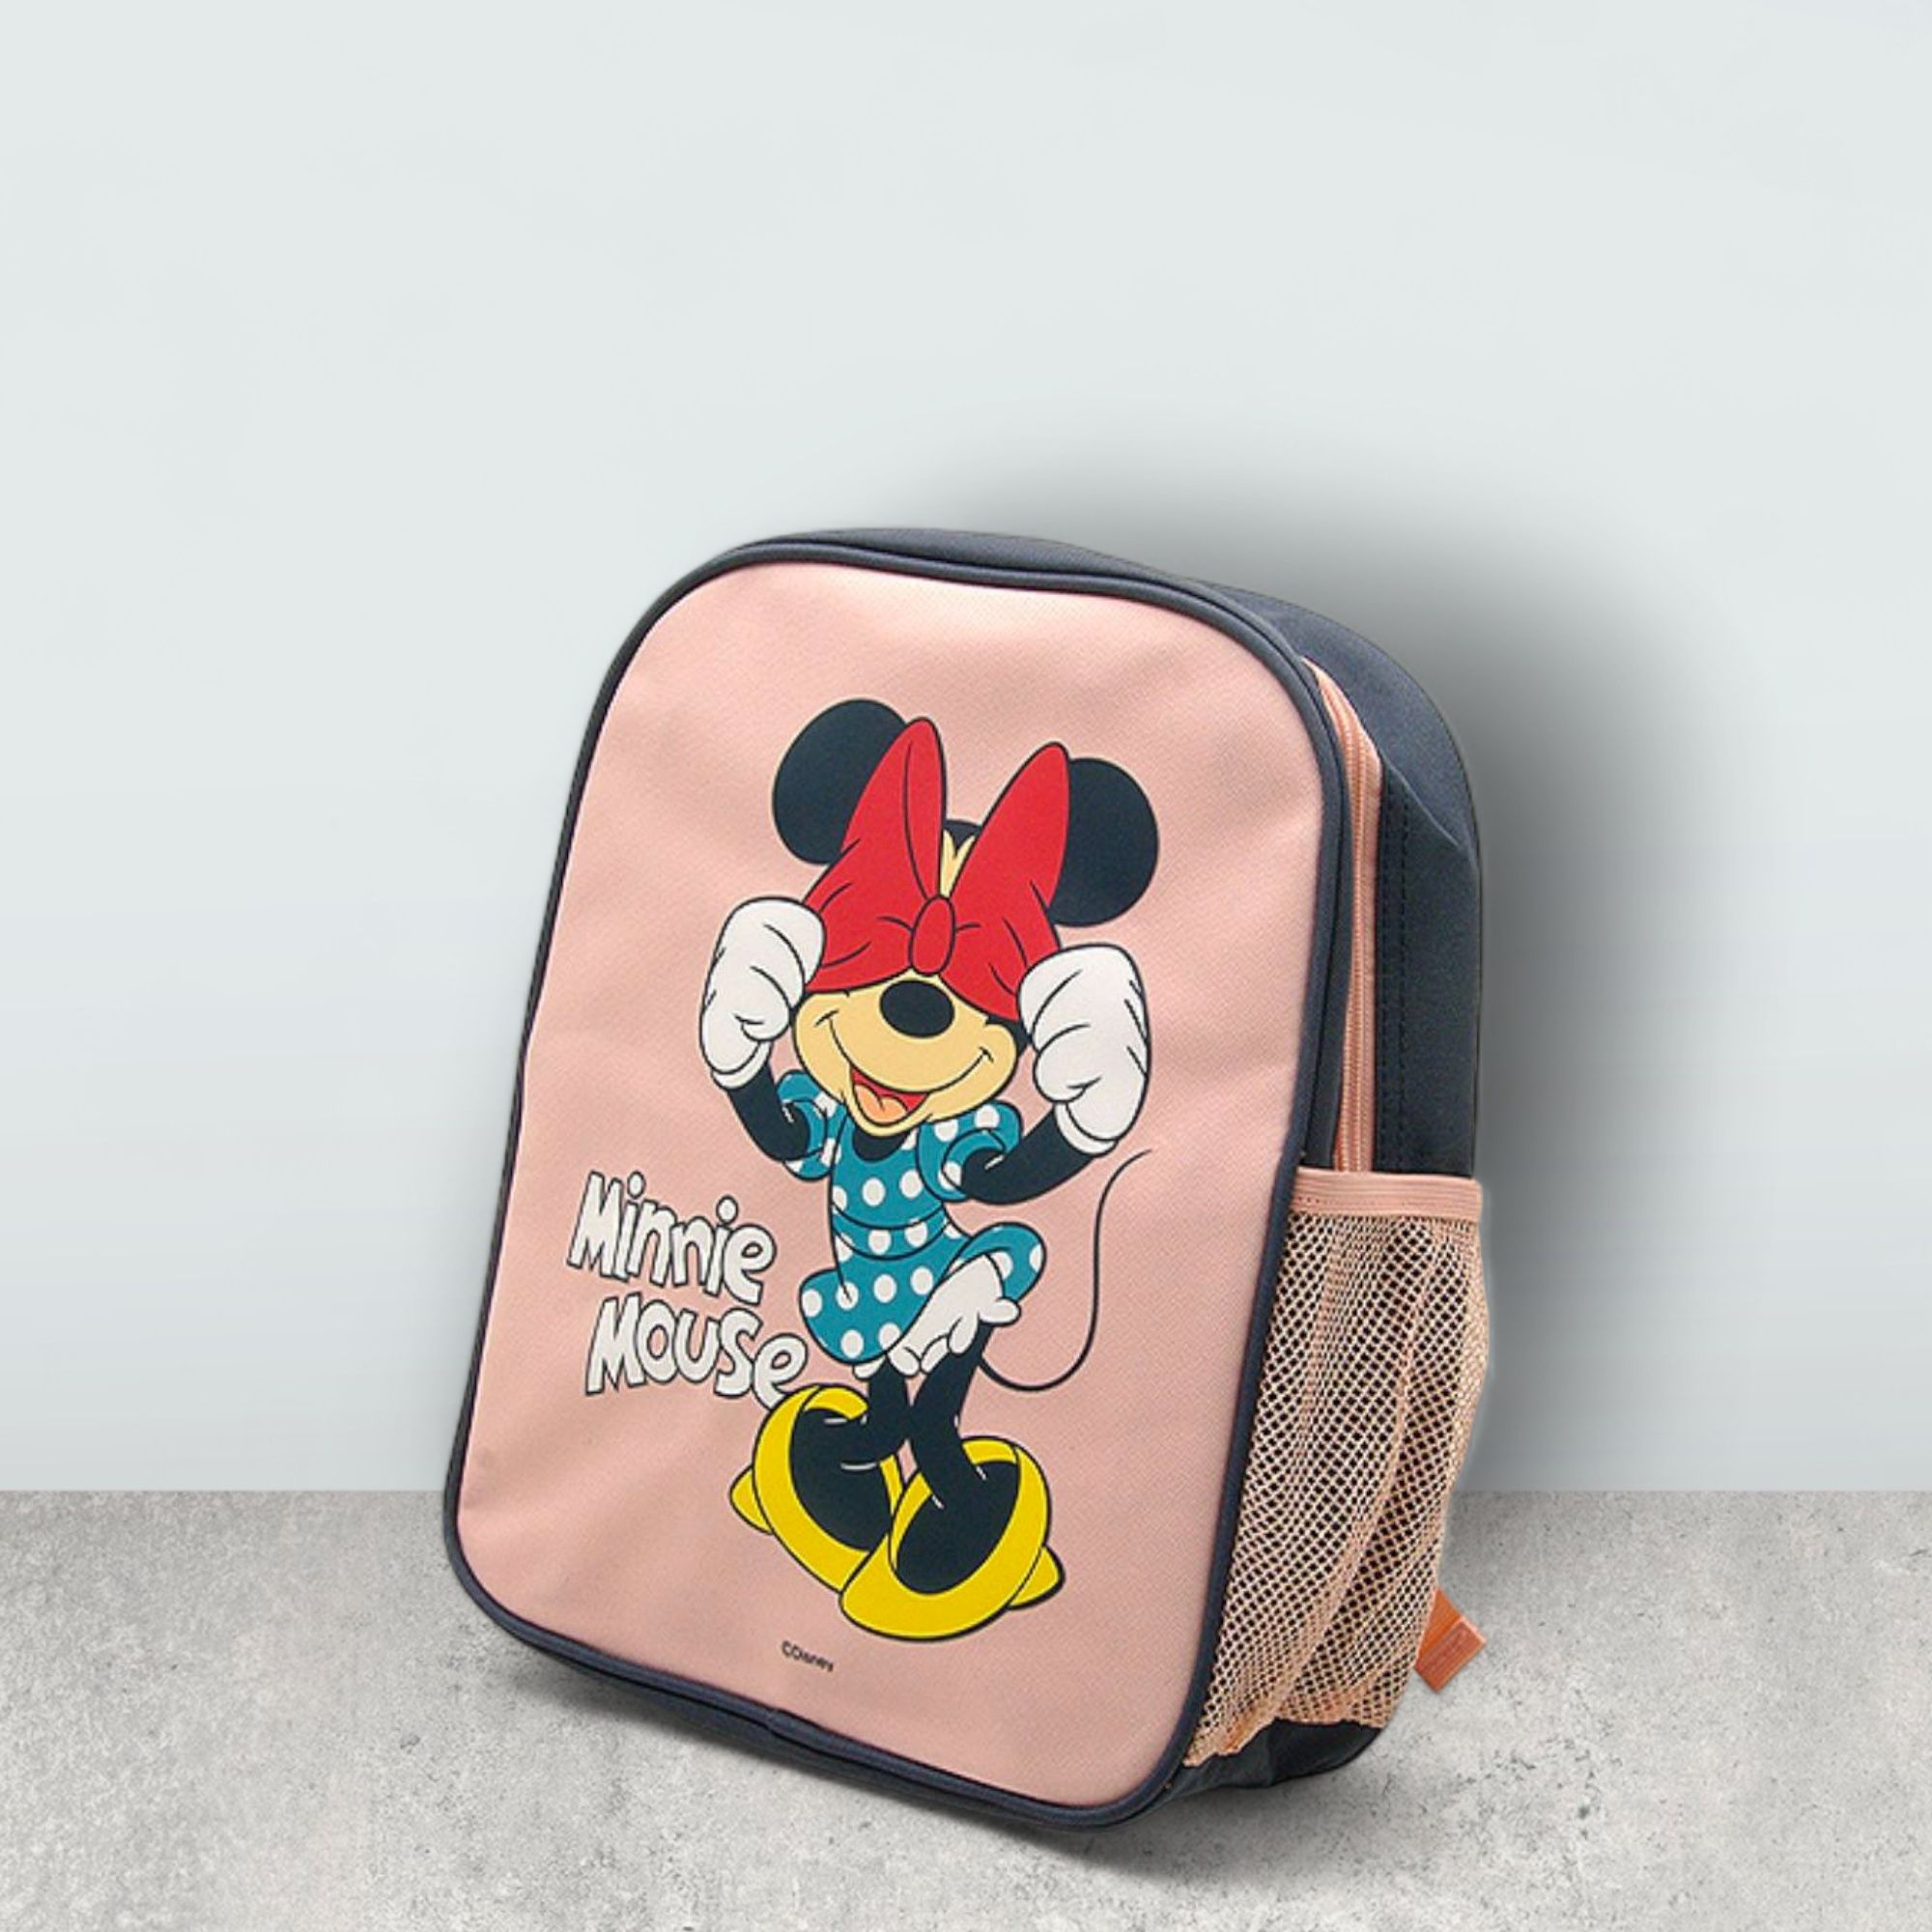 Детские рюкзаки "Дисней"
В наличии Minnie Mouse и Эльза